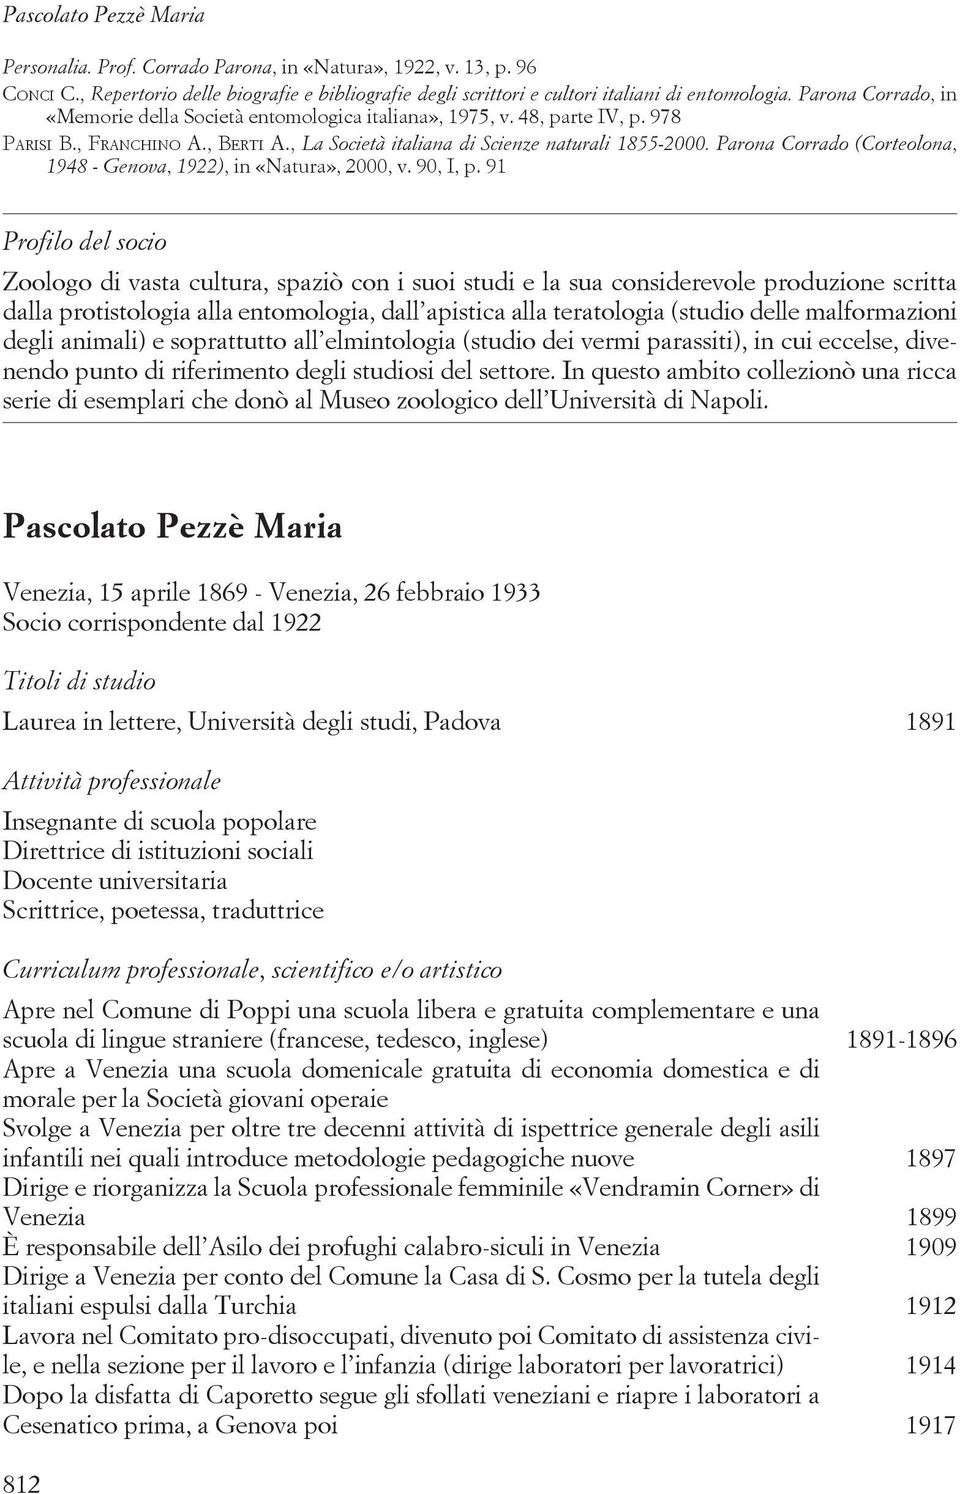 Parona Corrado (Corteolona, 1948 - Genova, 1922), in «Natura», 2000, v. 90, I, p.